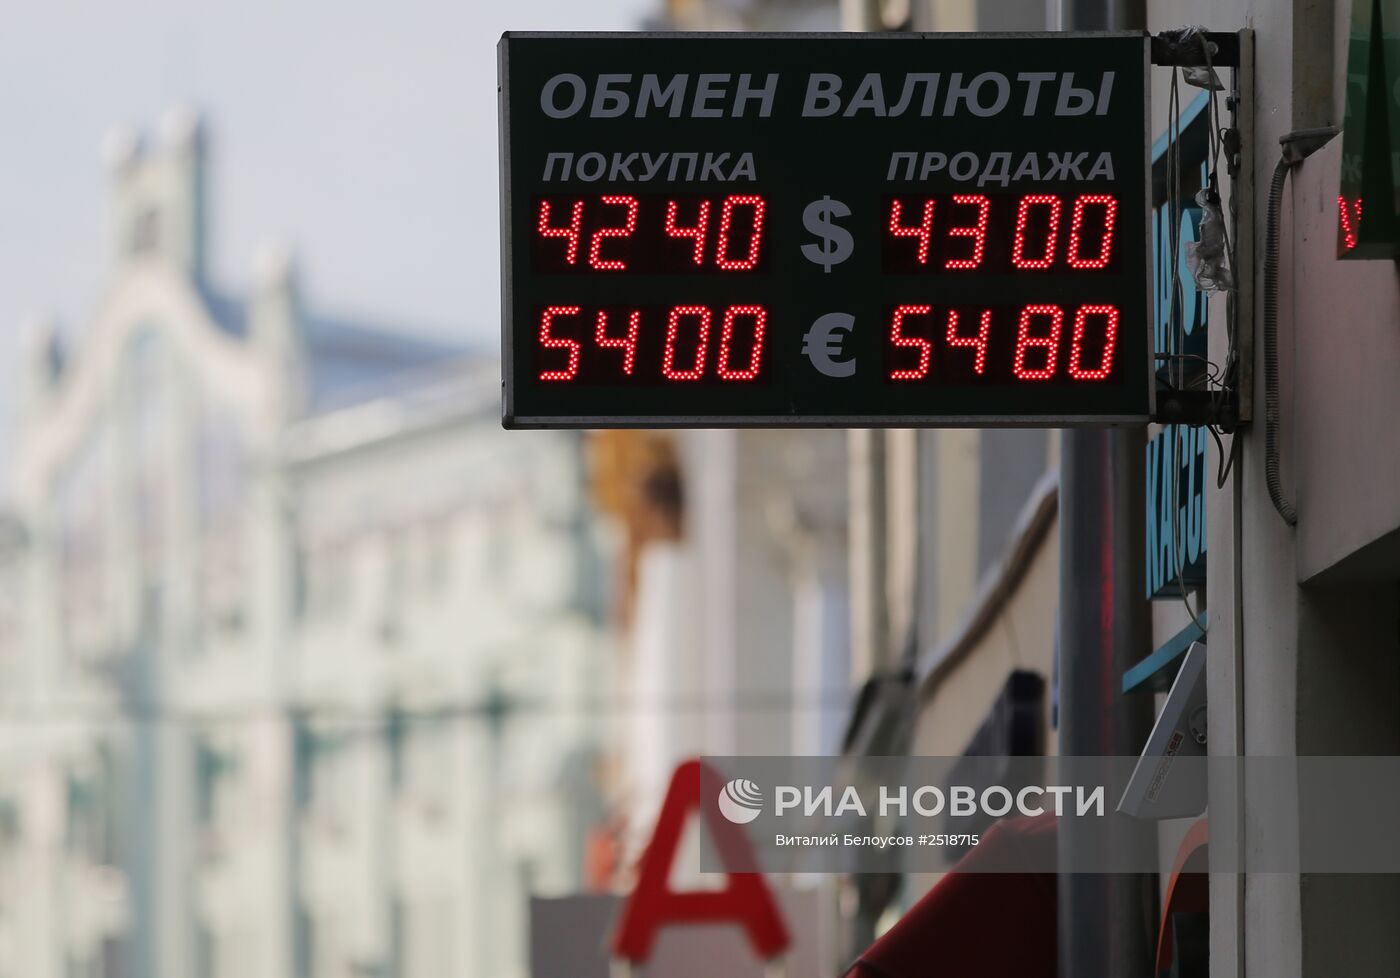 Курс Евро превысил отметку 54 рубля